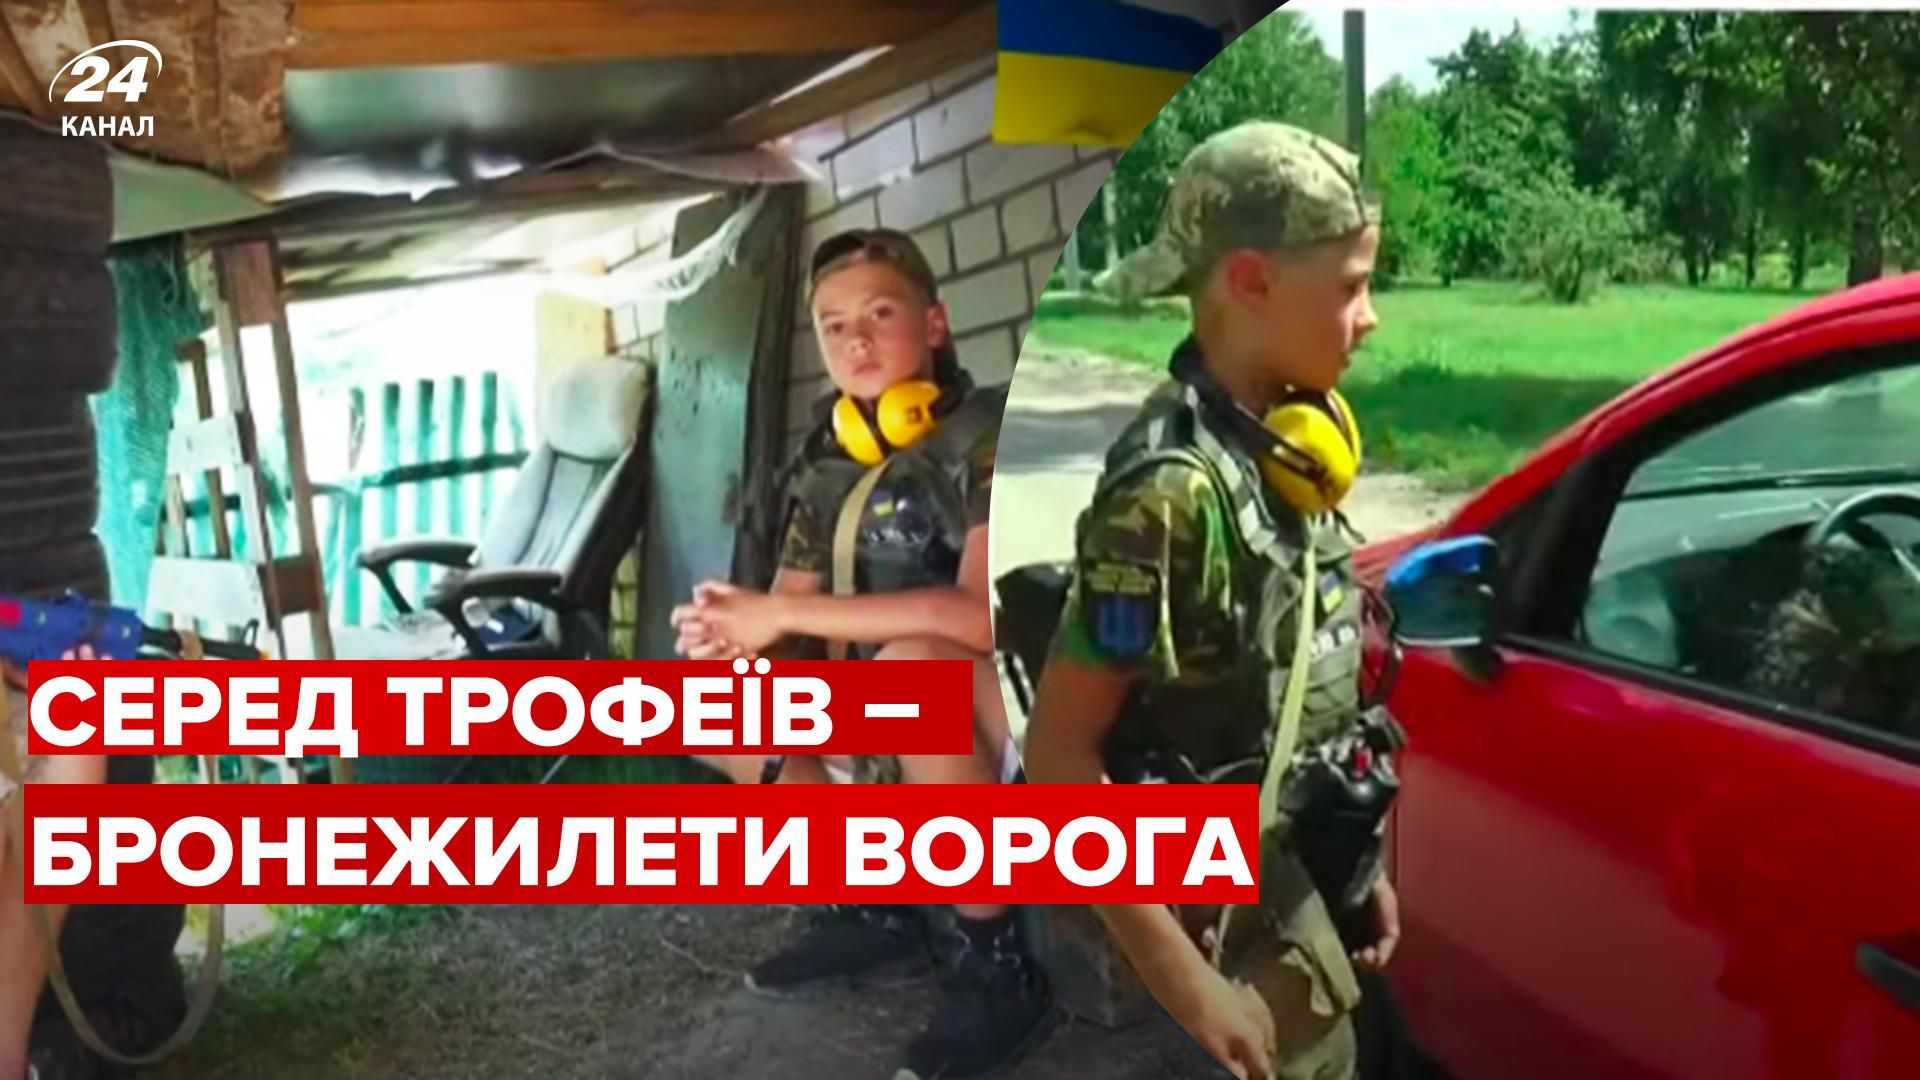 В Харьковской области подростки, пережившие оккупацию, устроили блокпост - видео 24 Канал